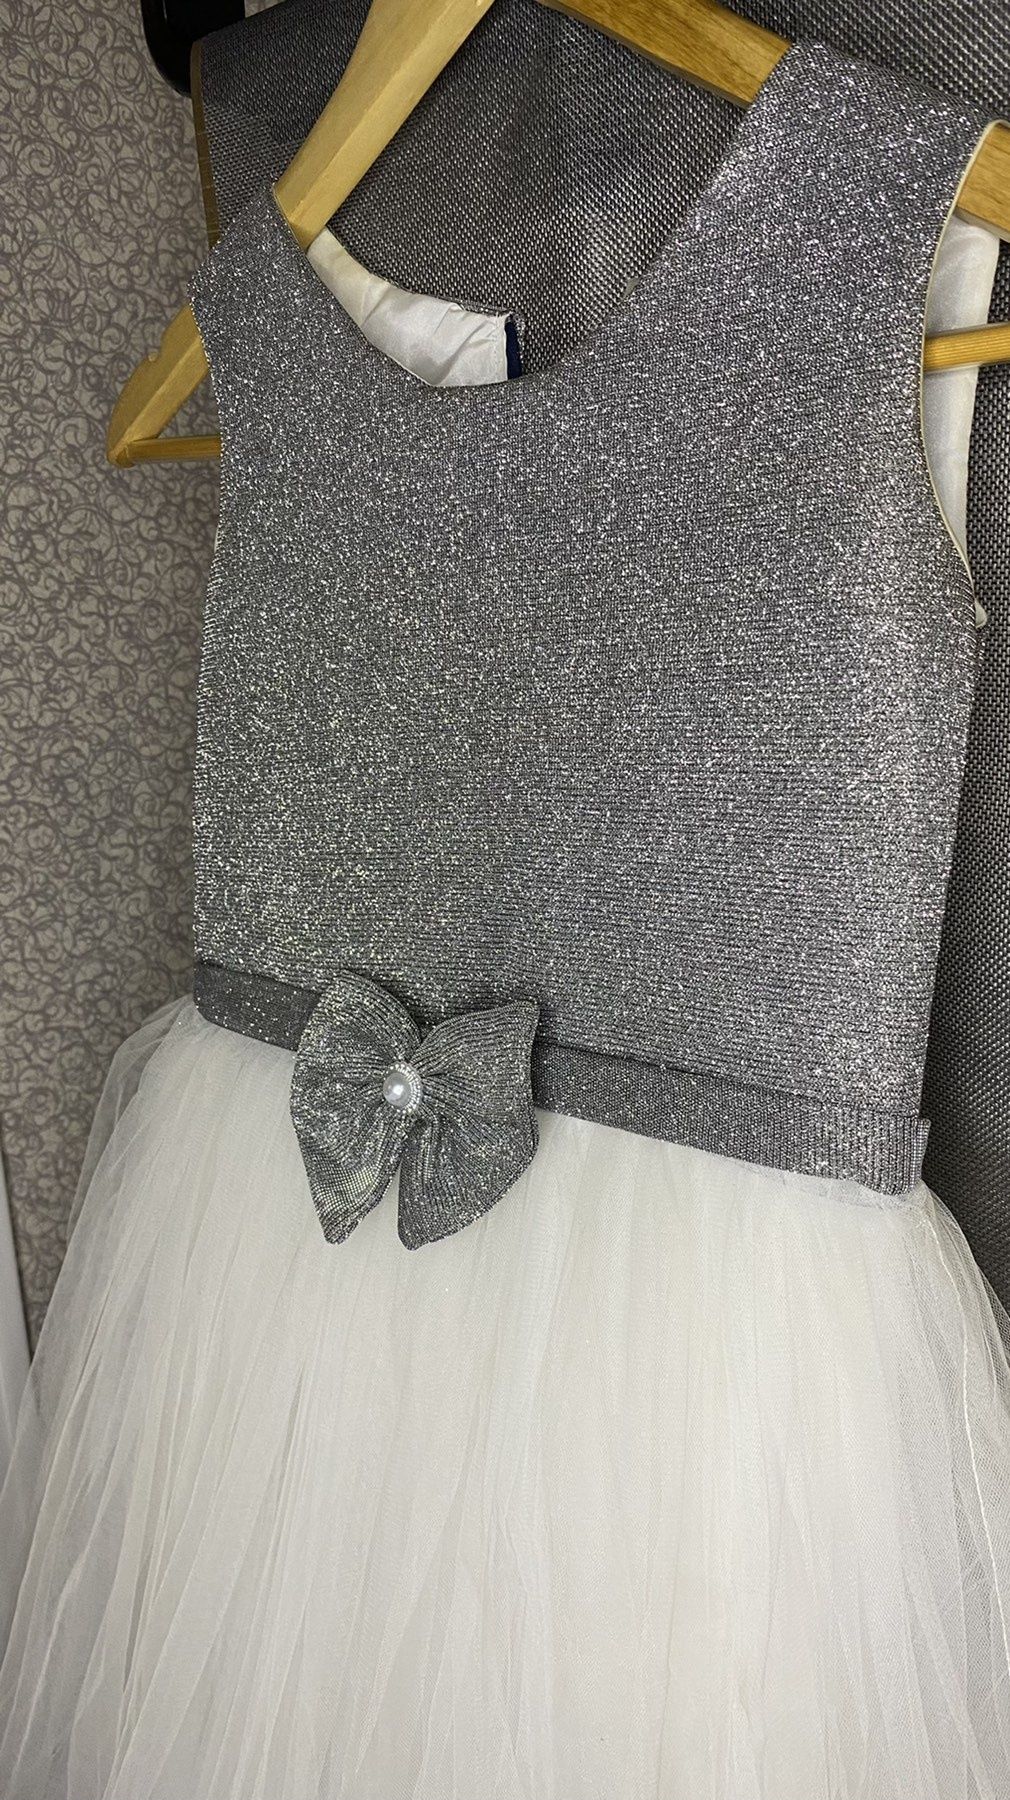 Сряблясто-біла сукня, плаття для дівчинки